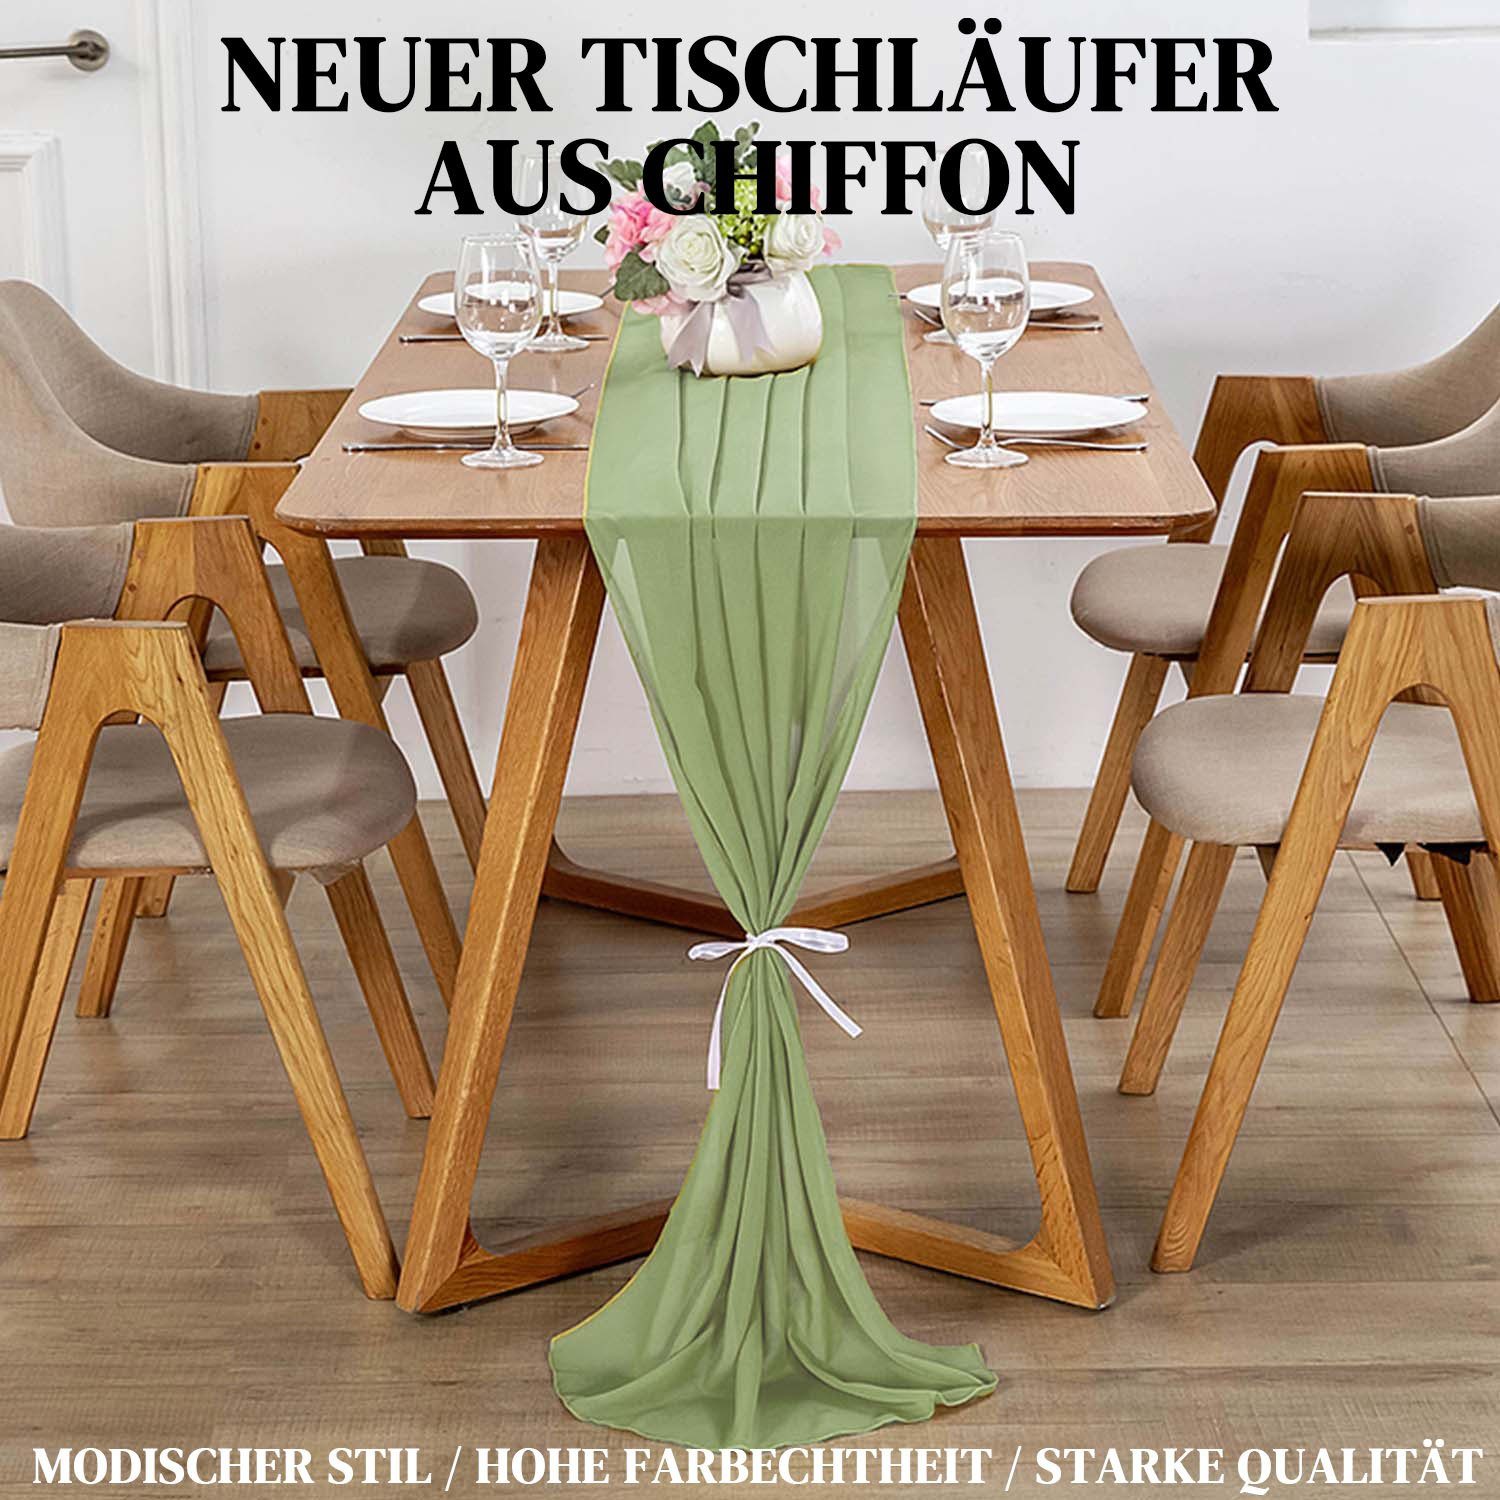 MAGICSHE Tischläufer Romantischer Chiffon Grün Modern 3m Abwaschbar Tischdeko